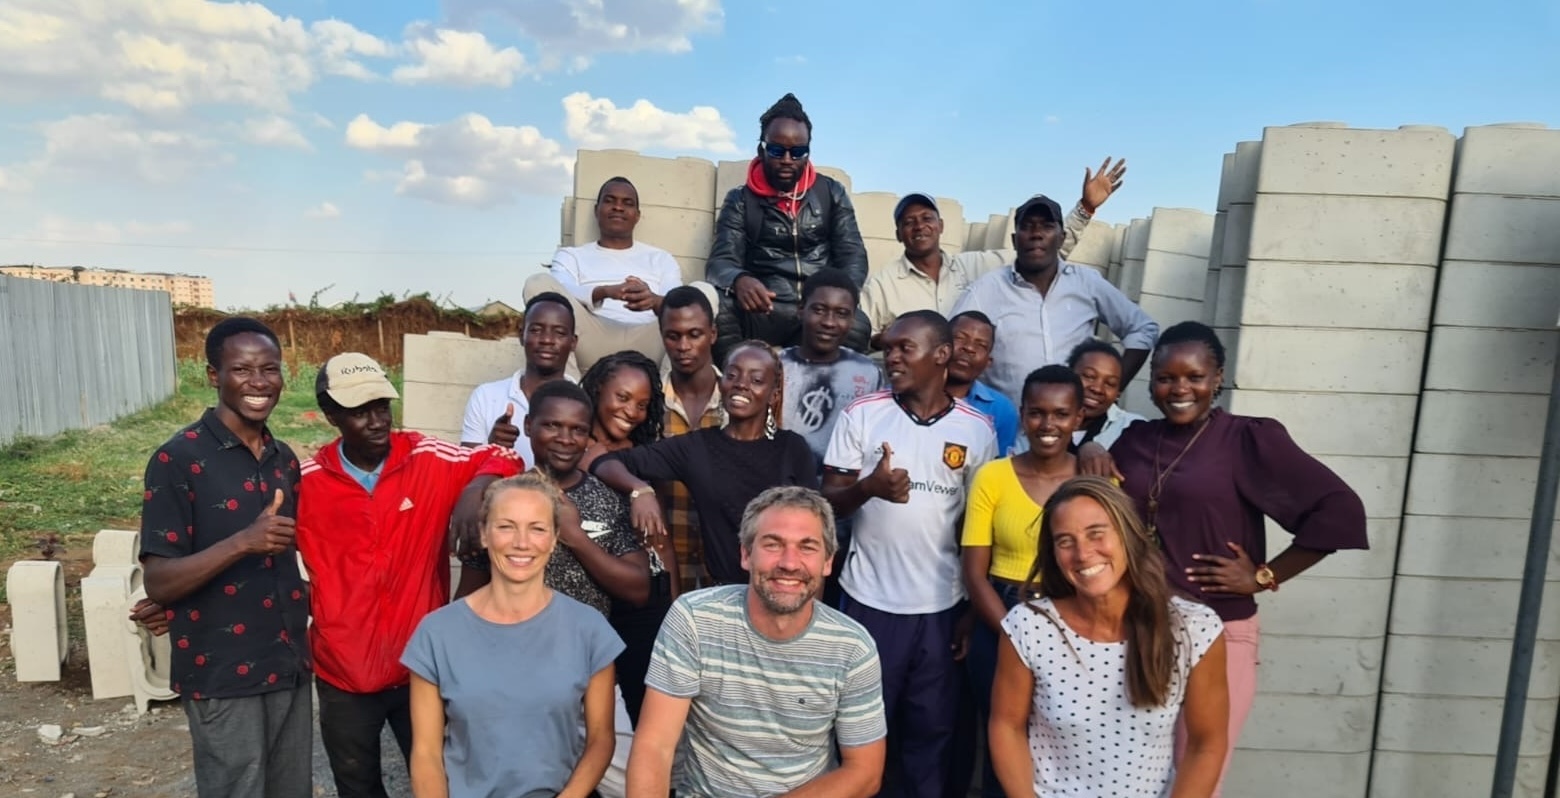 Unsere Reise nach Nairobi: Begegnungen, Erfolge und Herausforderungen